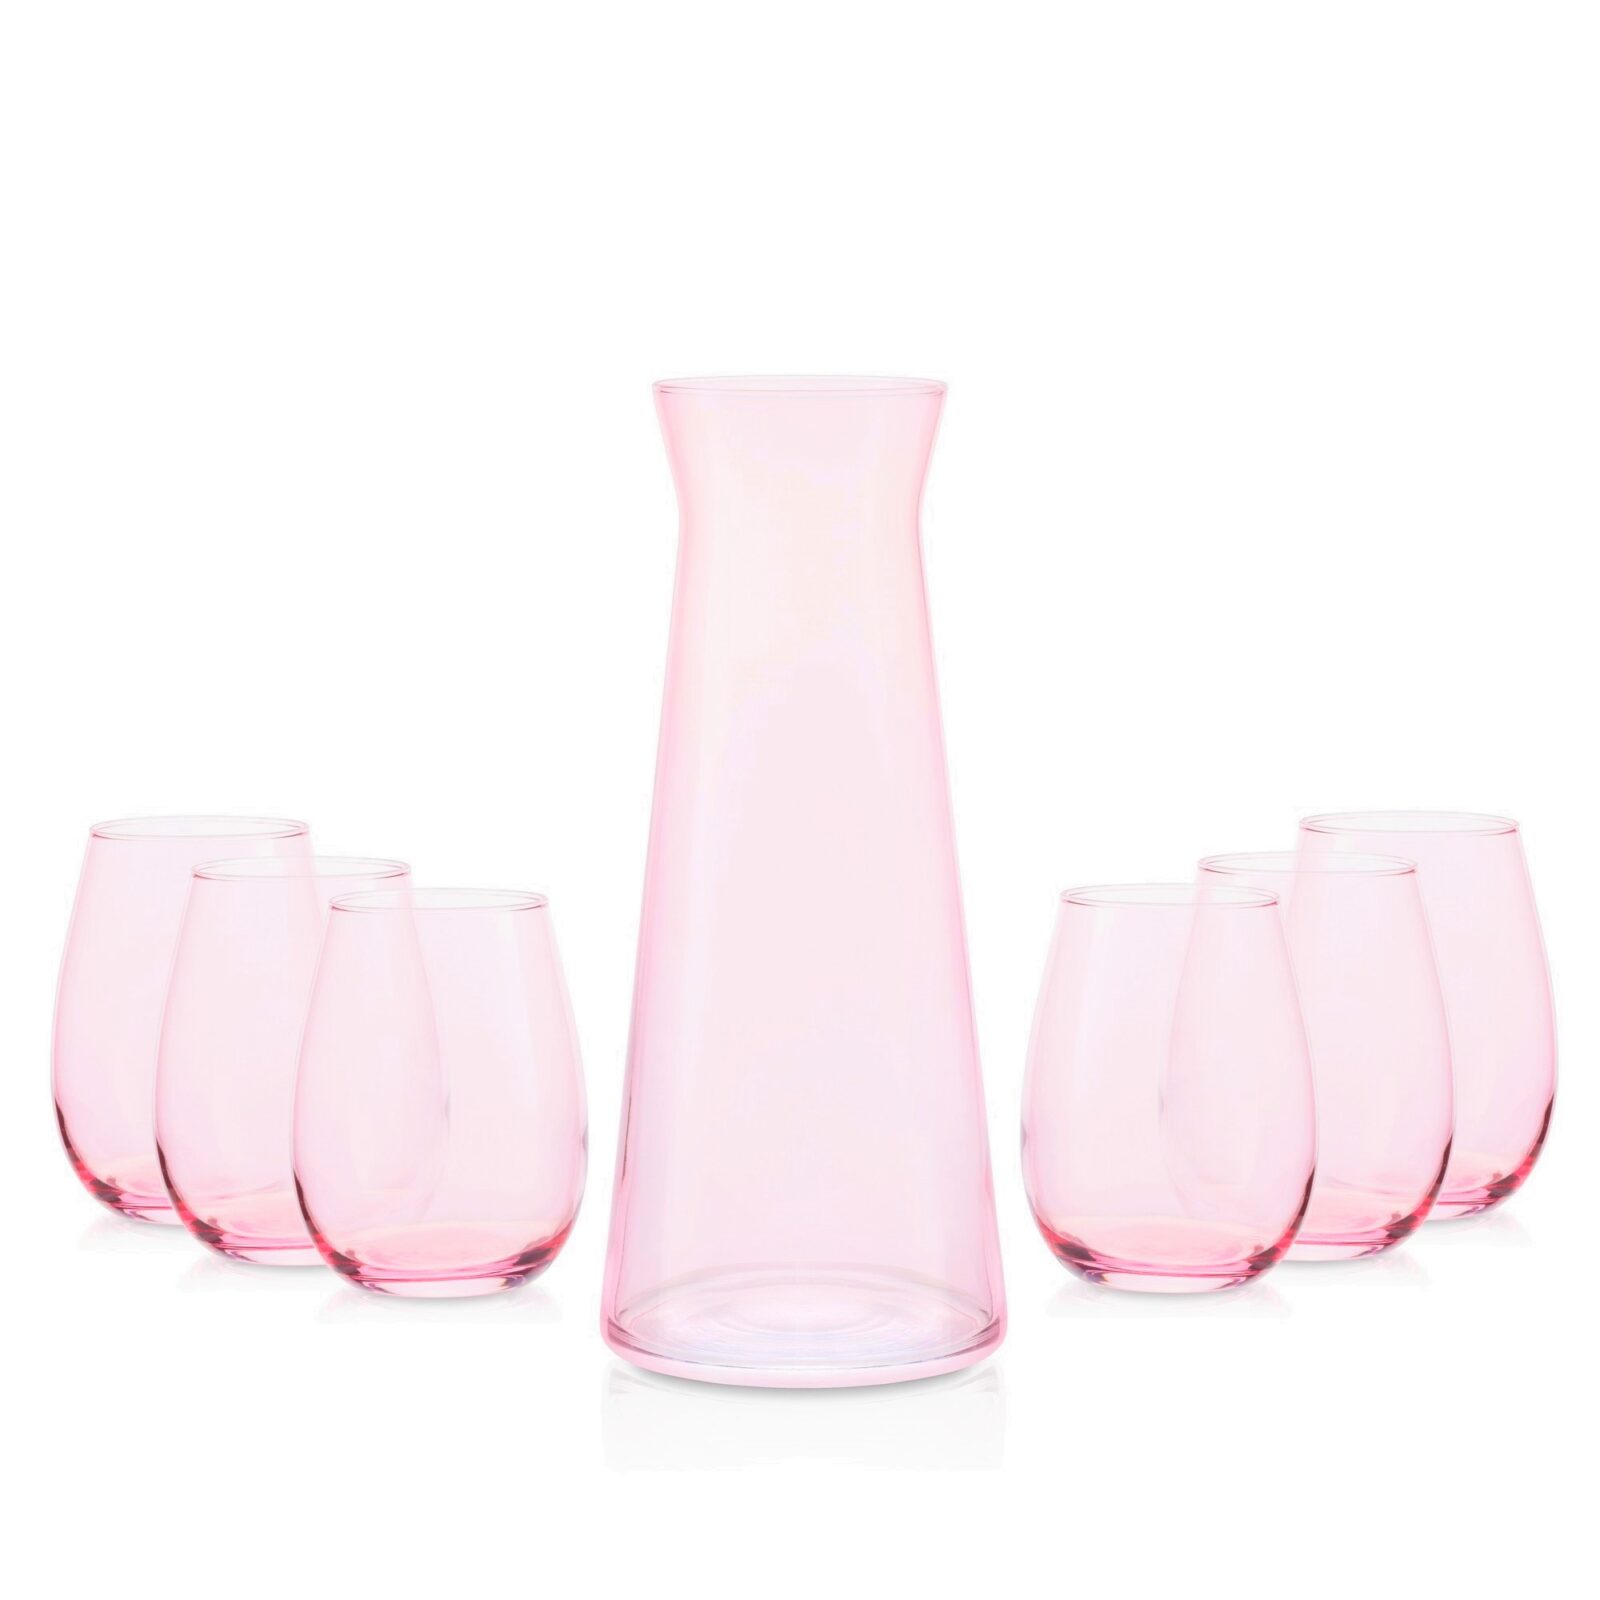 Zestaw szklana karafka + 6 szklanek różowy transparent 345 ml